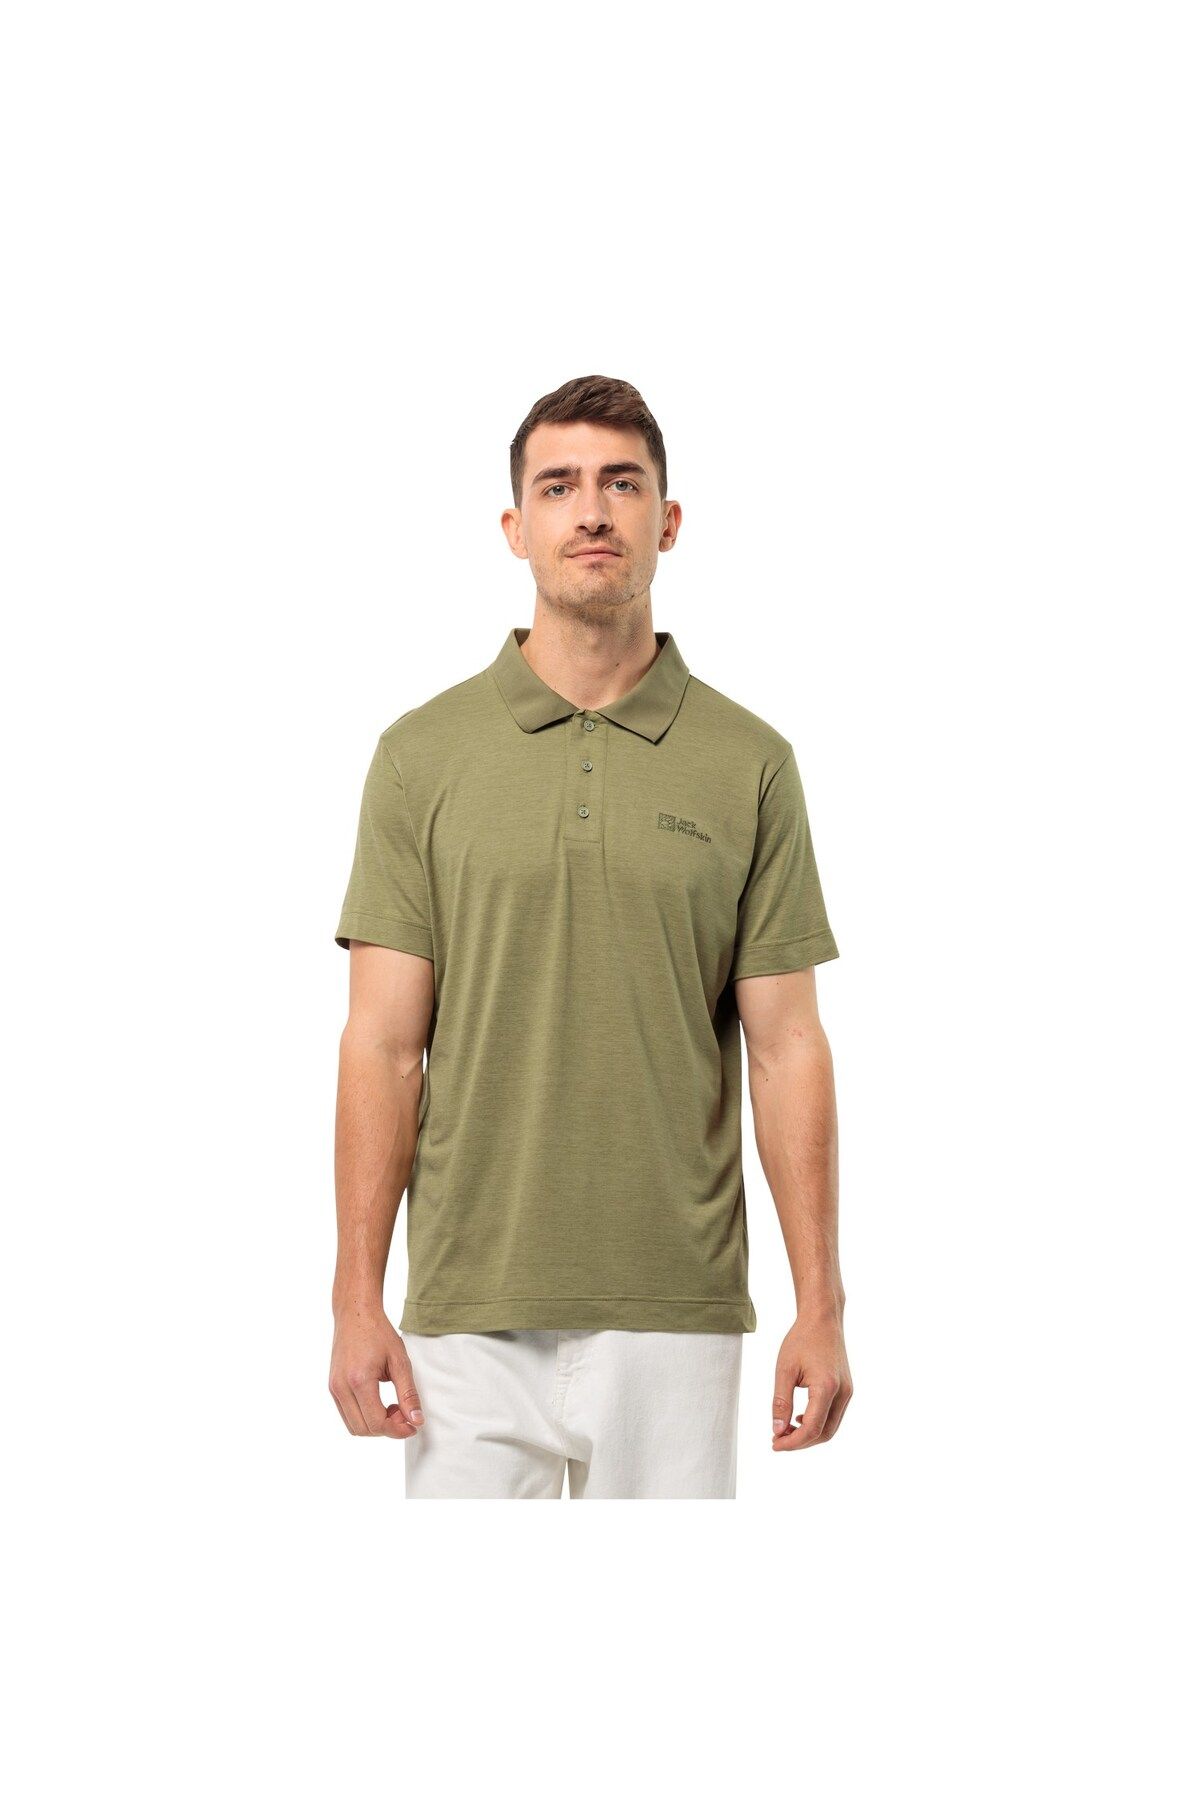 Jack Wolfskin Travel Polo Erkek Outdoor Tişört Yeşil